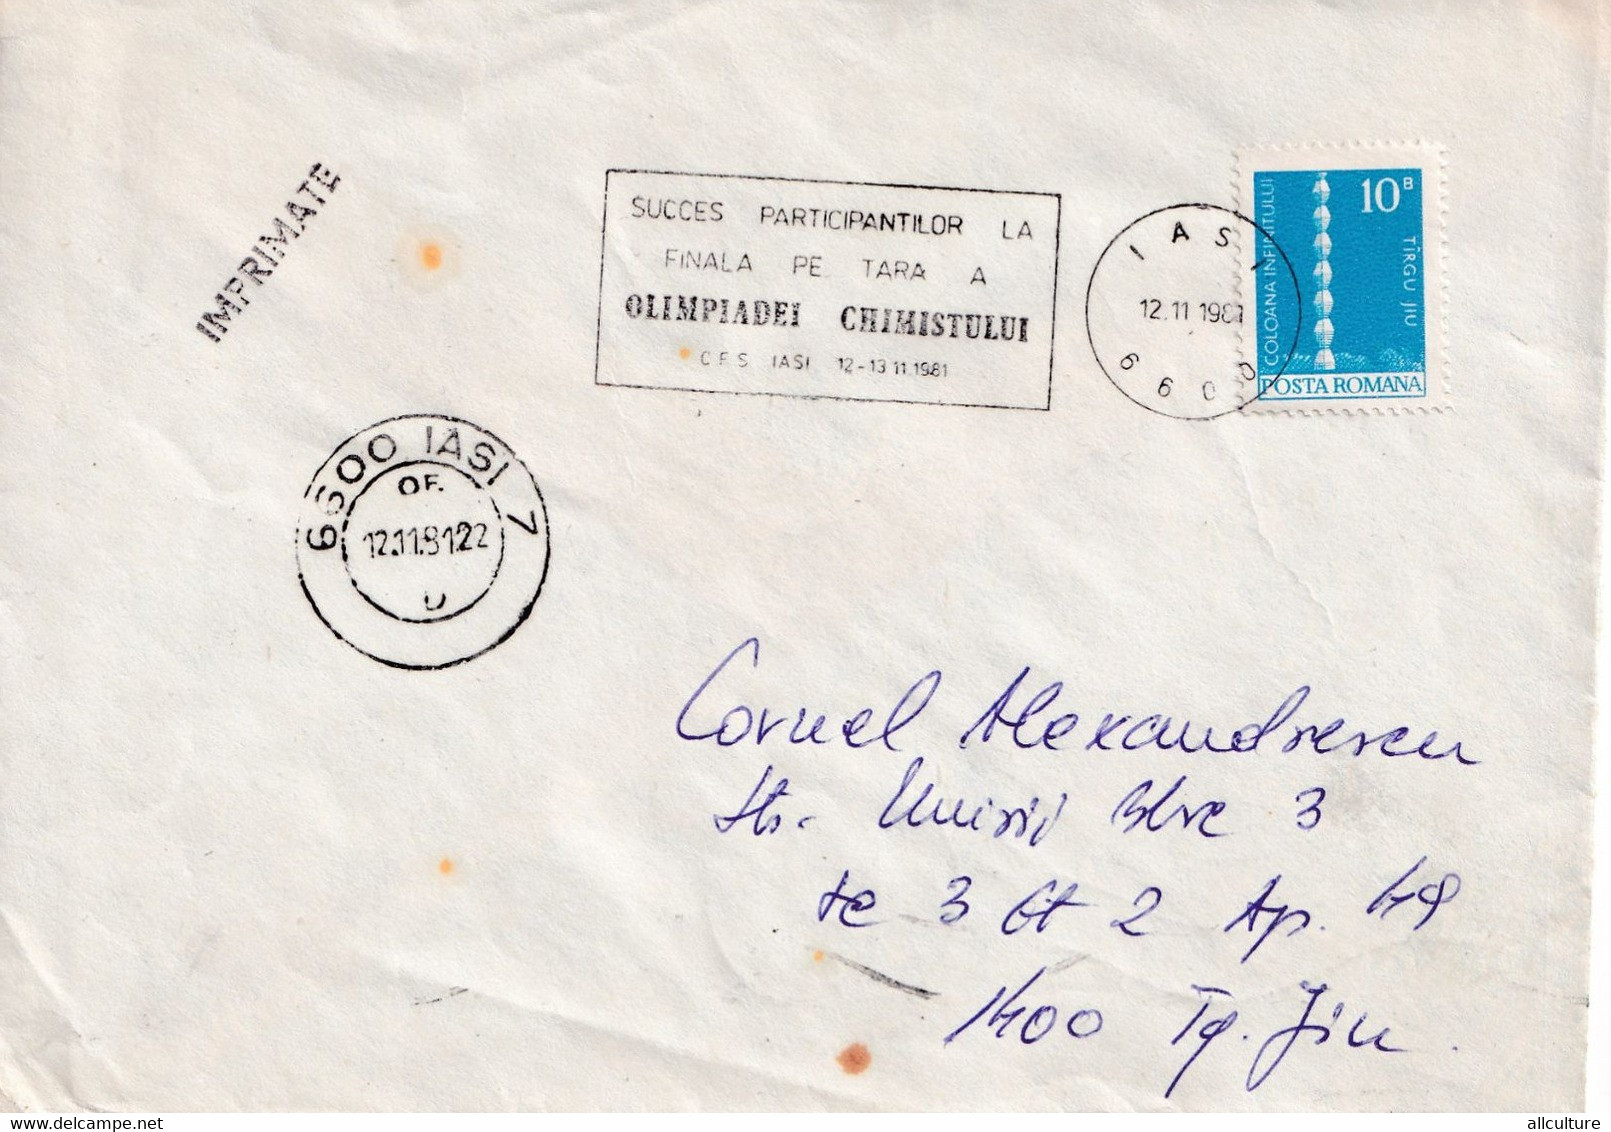 A3084 - Olimpiada Chimistului, Iasi 1981 Romania Posta Romana - Brieven En Documenten